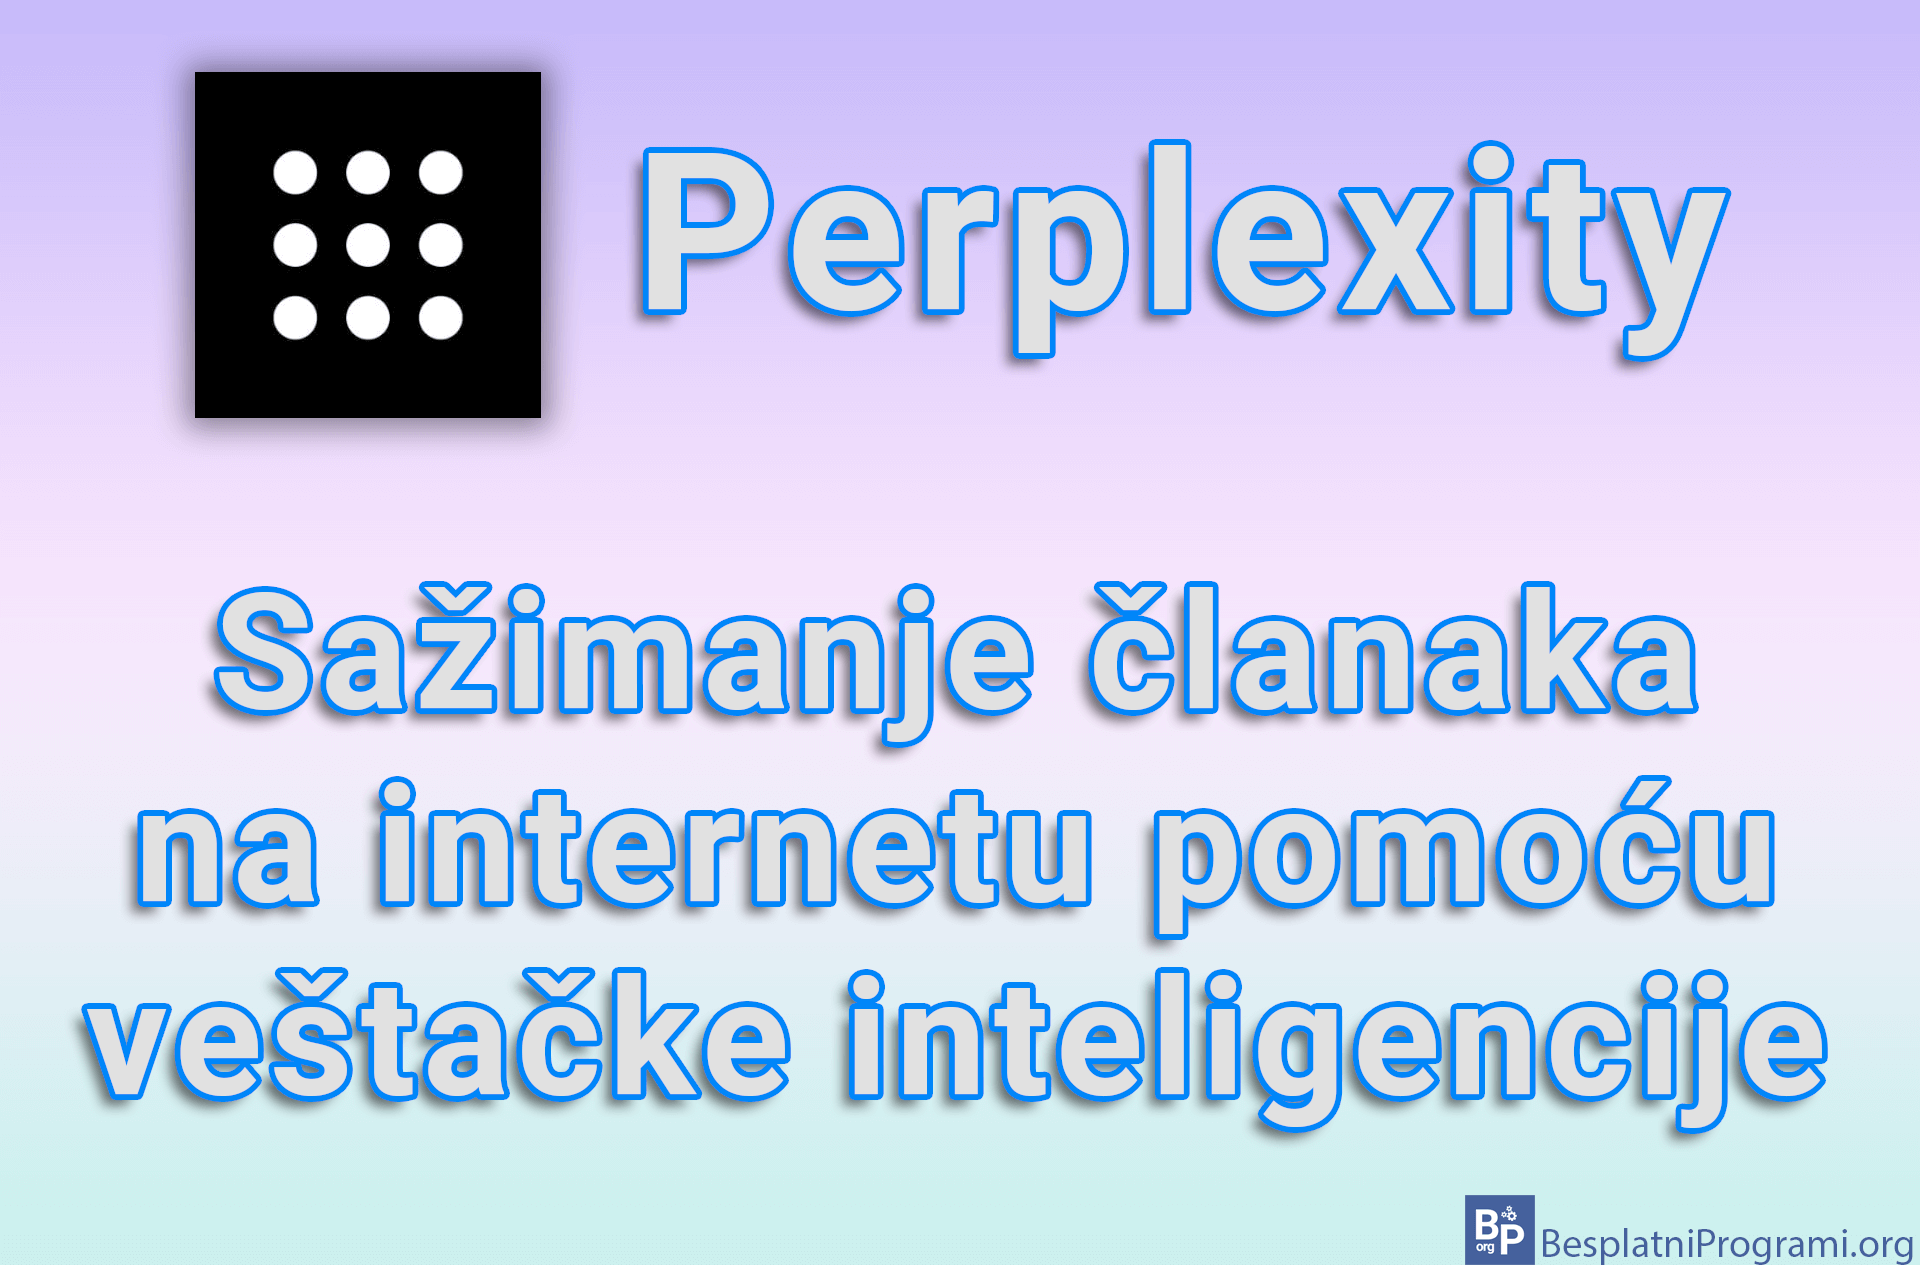 Perplexity - Sažimanje članaka na internetu pomoću veštačke inteligencije